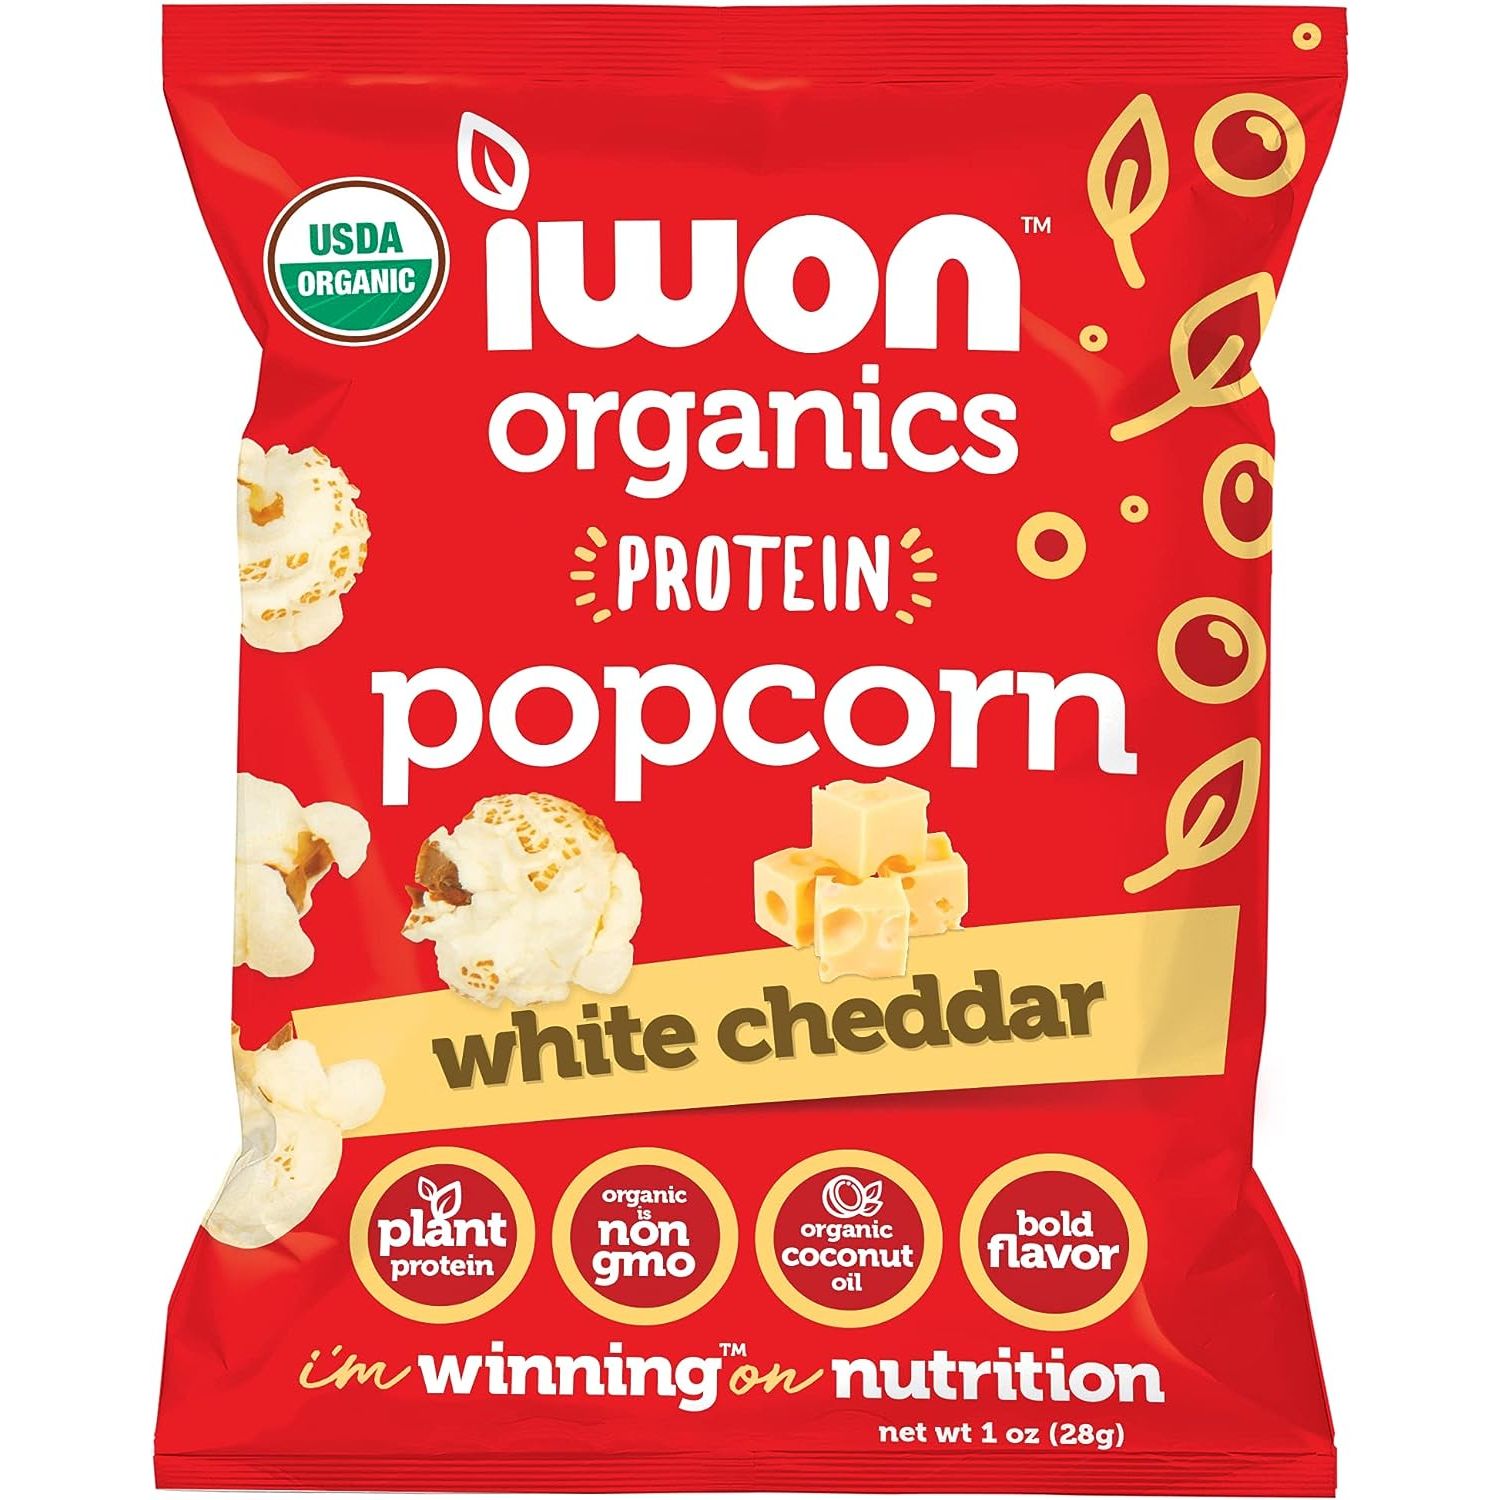 IWON Organics Protein Popcorn (1 bag) iwon-organics-protein-popcorn-1-bag Protein Snacks White Cheddar IWON Organics